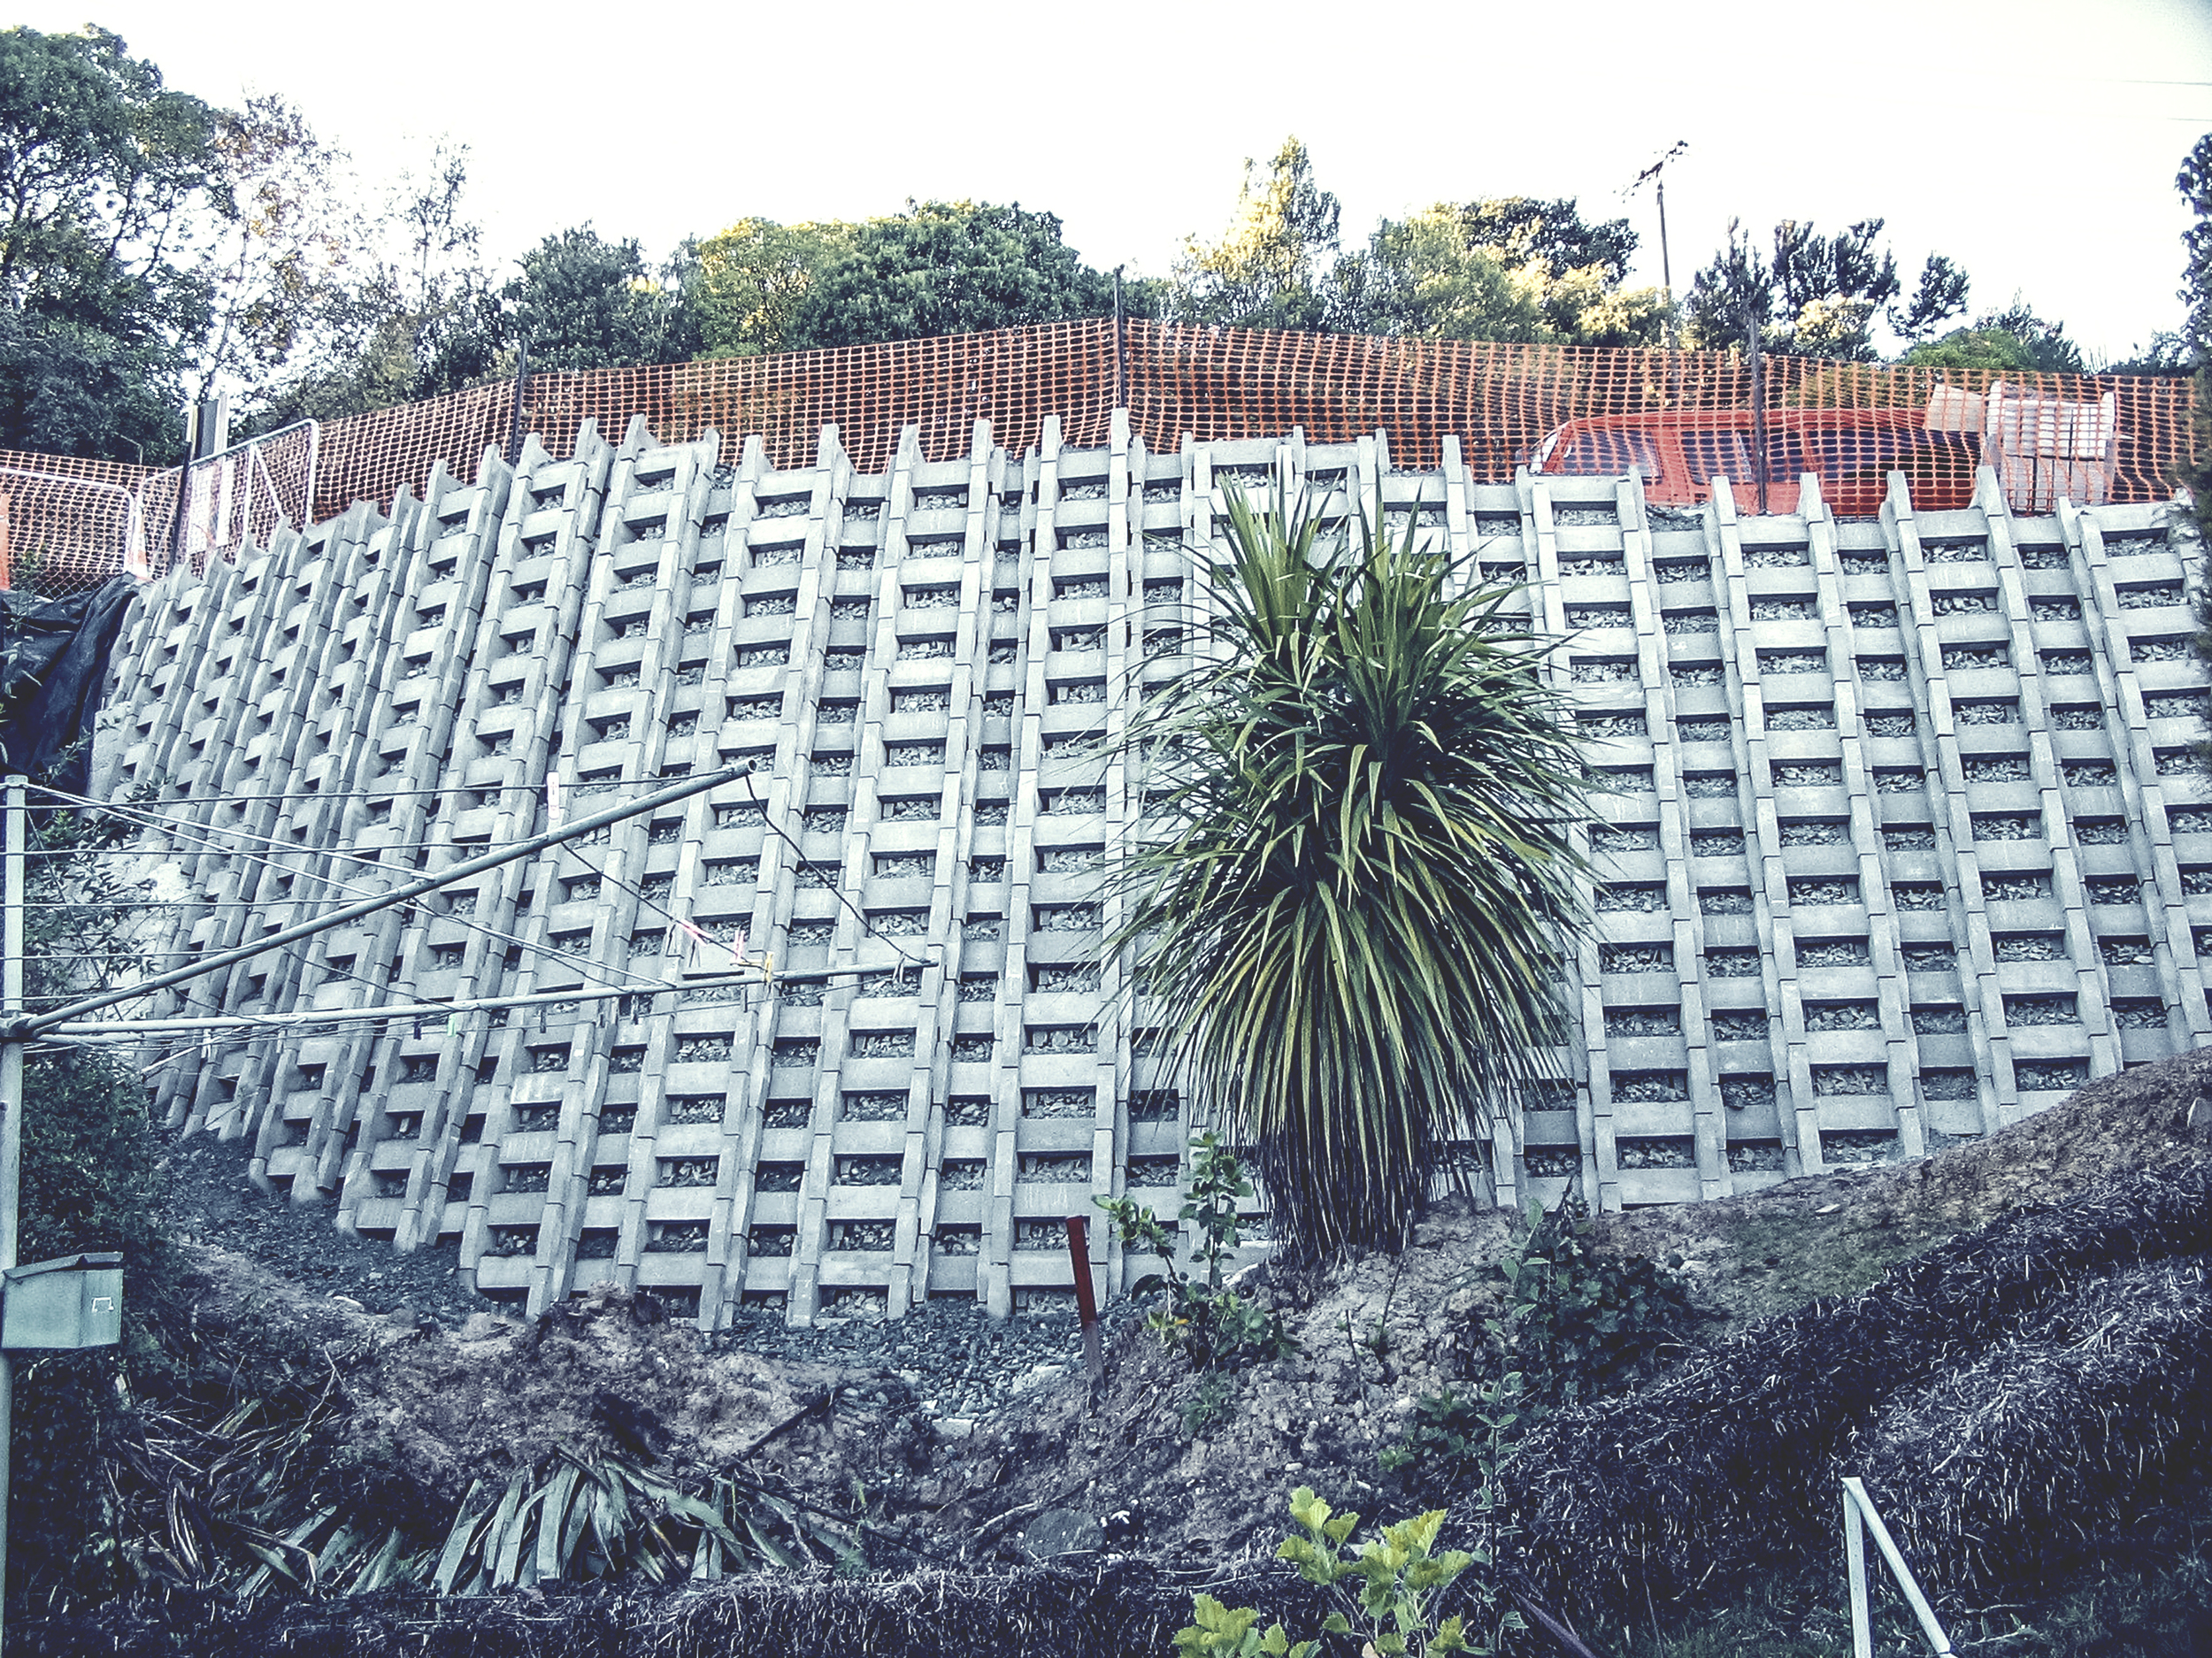 Concrete Crib Wall